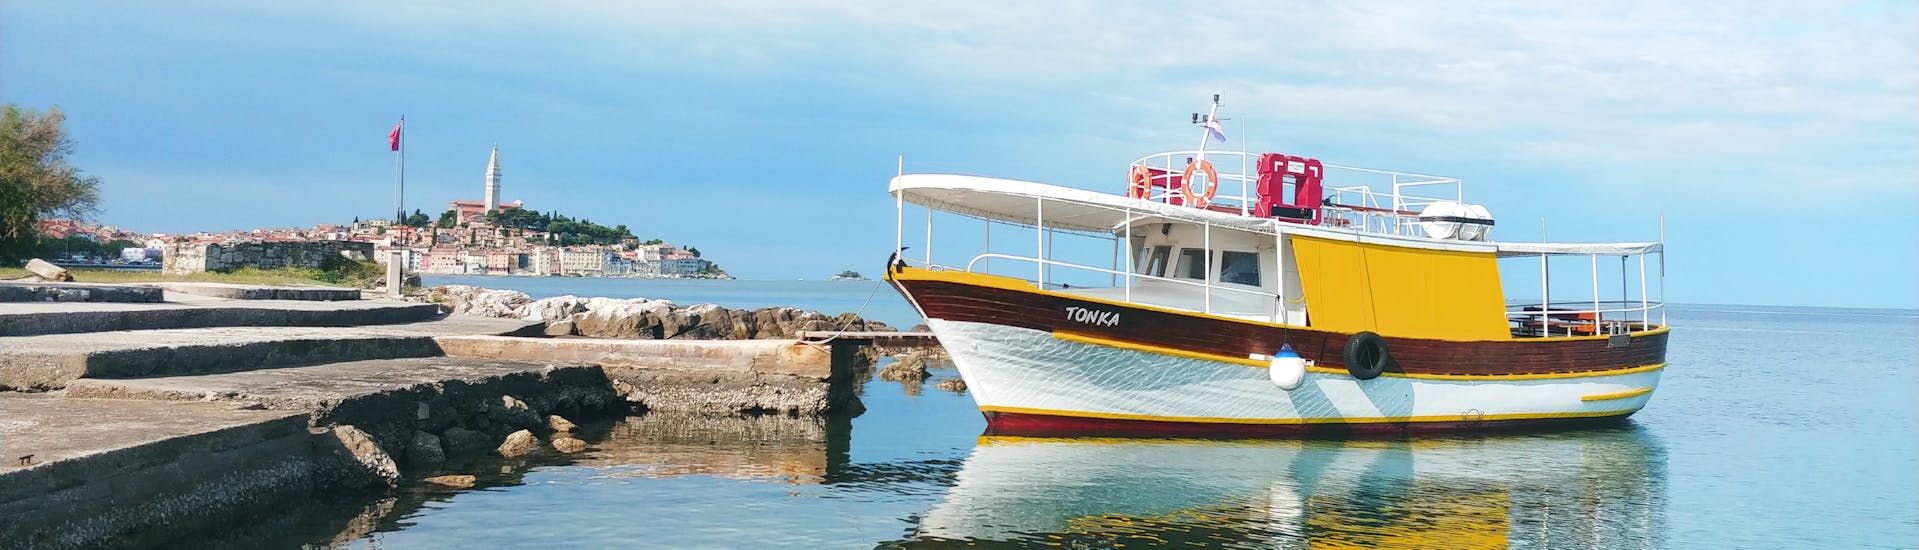 Foto del barco llamado Tonka durante la excursión en barco al fiordo de Lim organizada por Boat Excursions Tonka Rovinj.